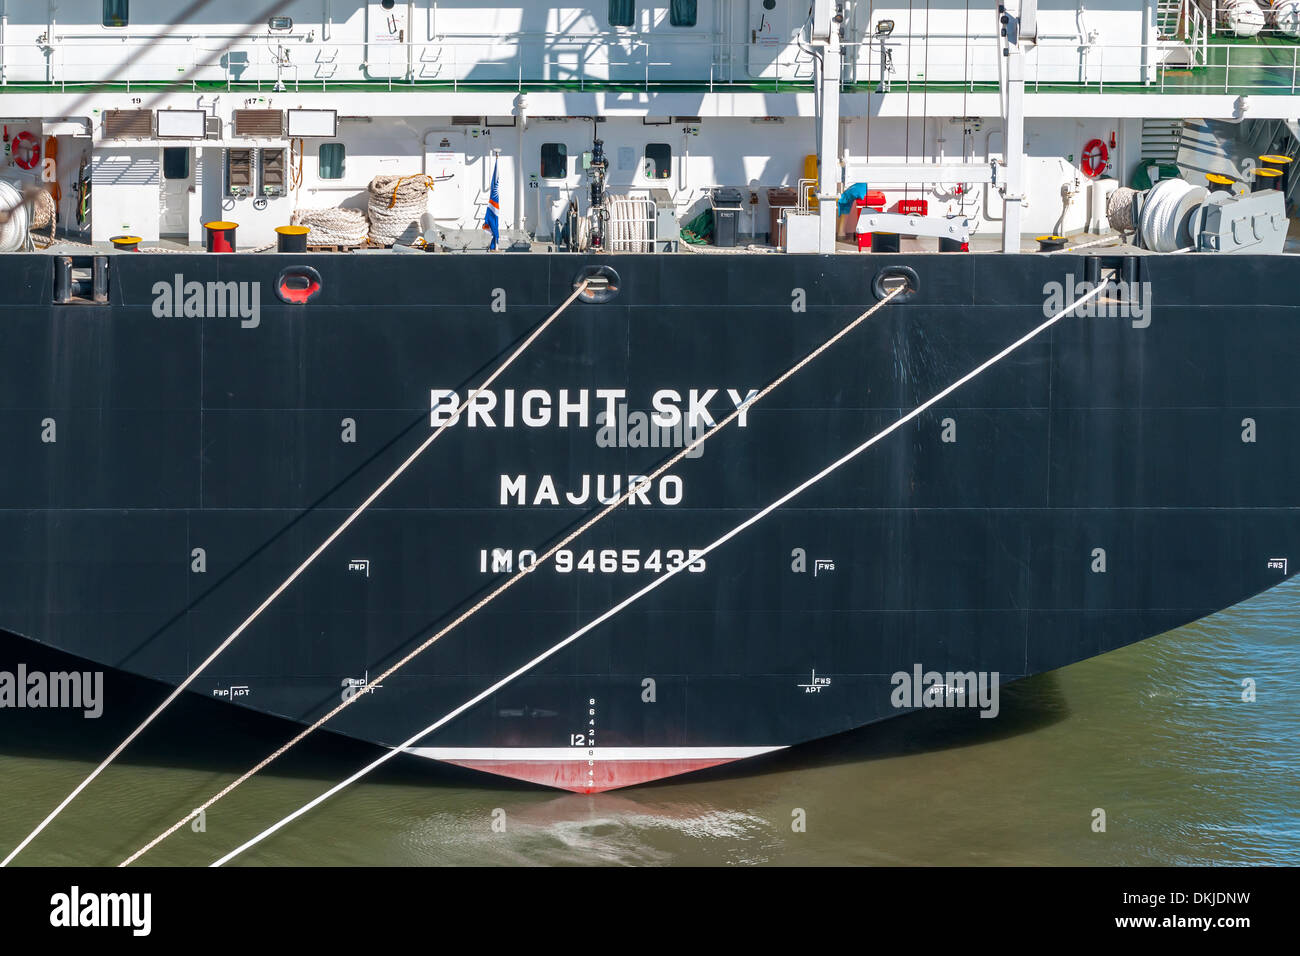 Ship Bow - Bright Sky Majuro IMO 9465435 Stock Photo